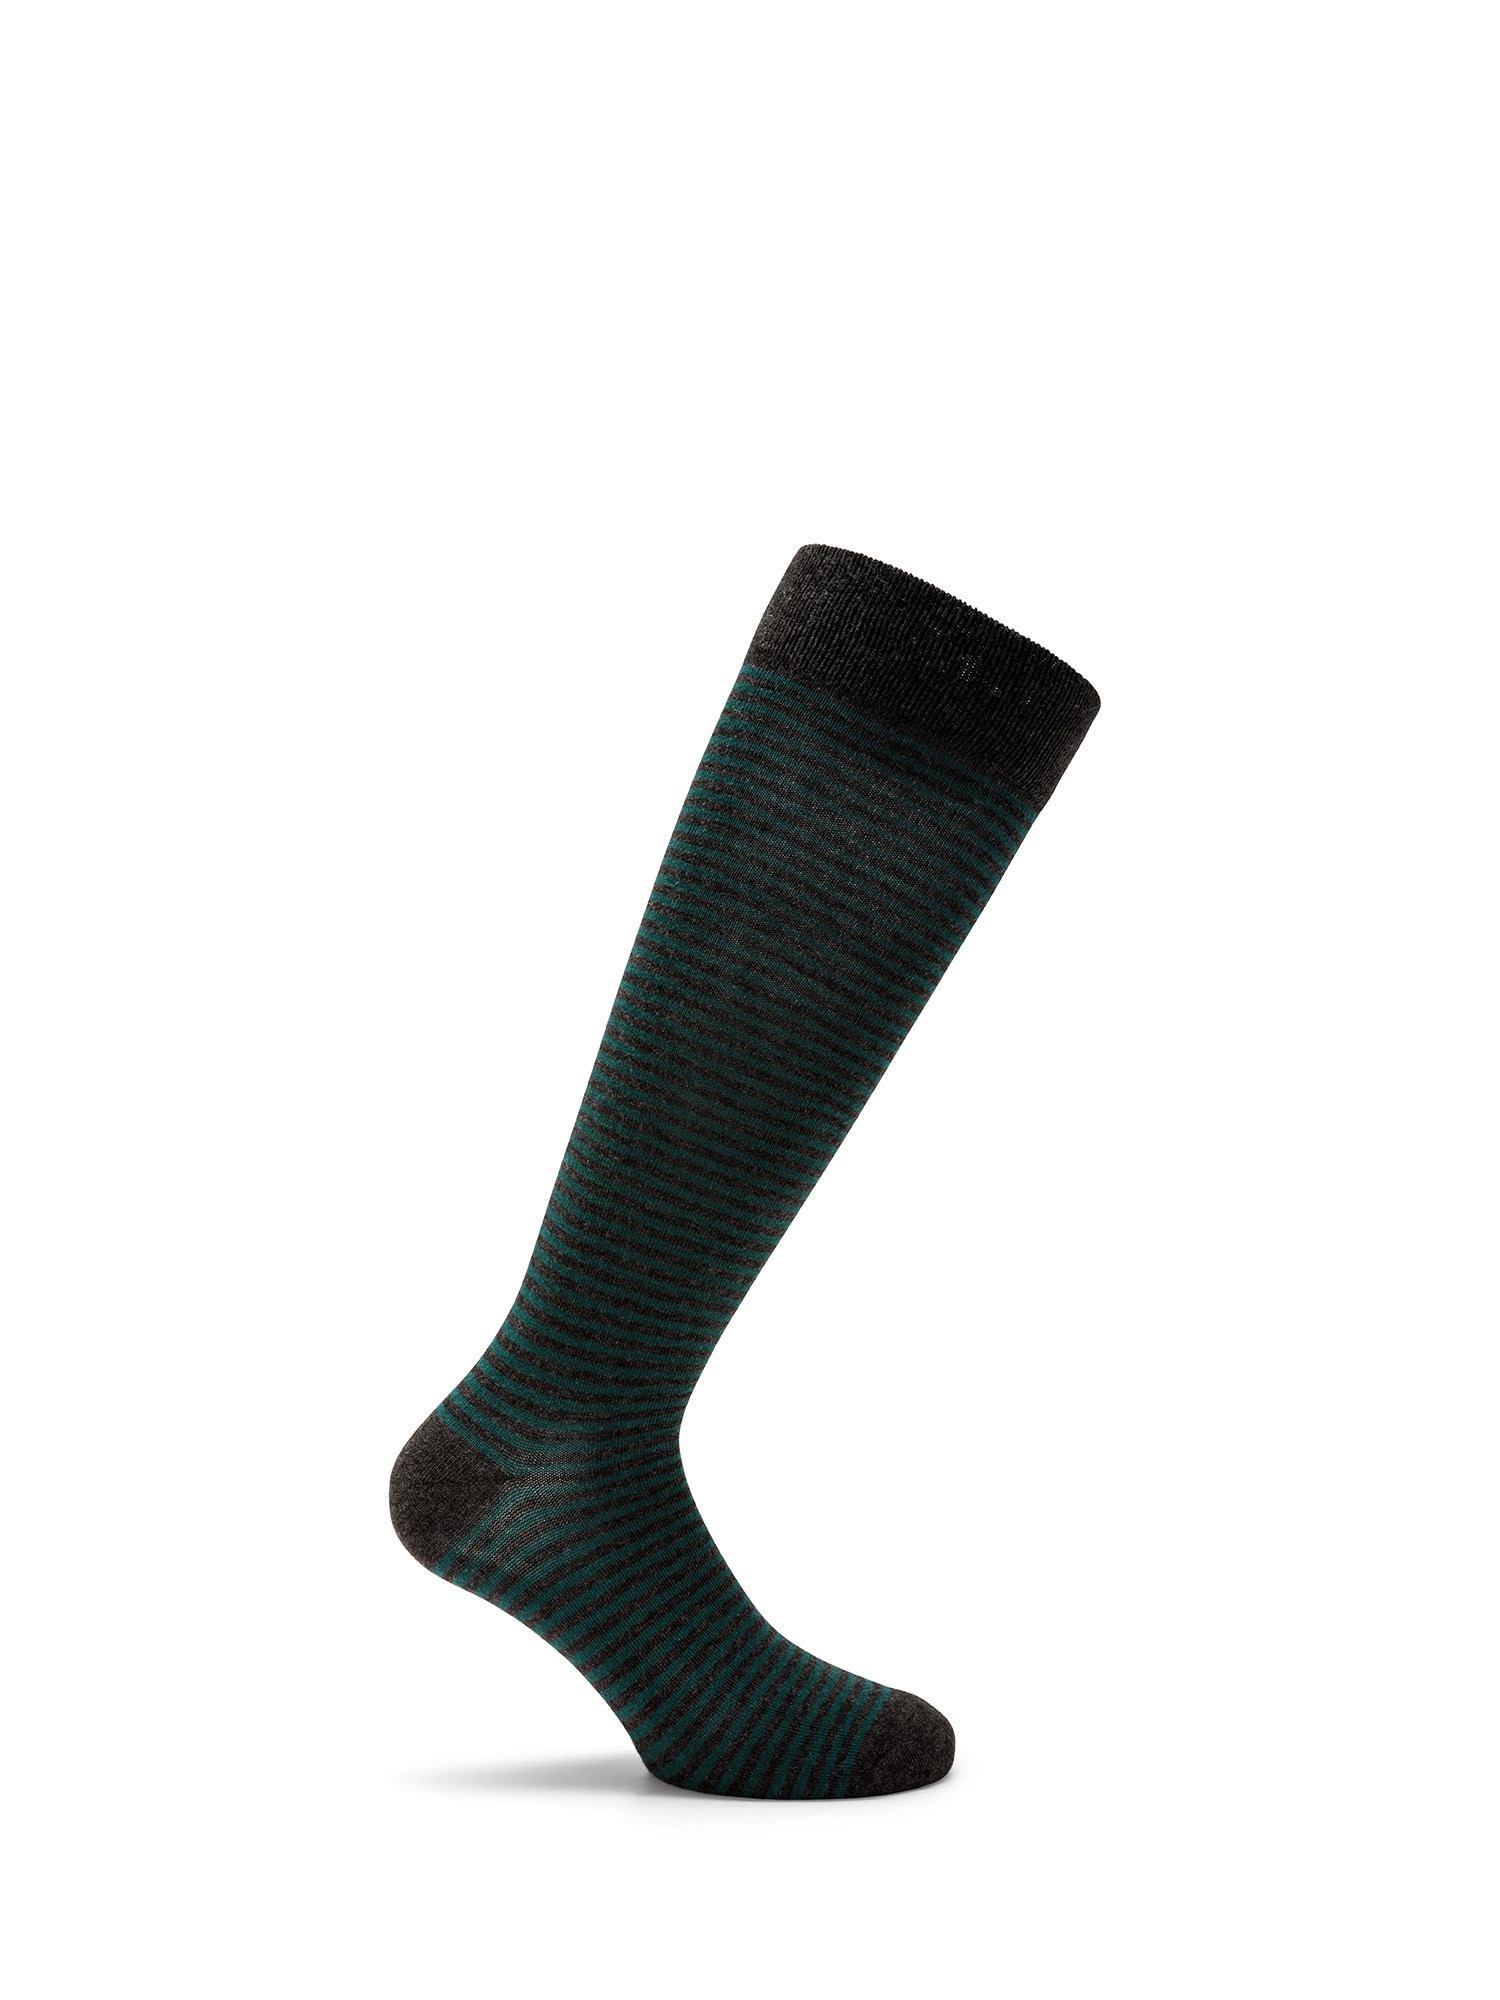 Luca D'Altieri - Set of 3 patterned long socks, Grey, large image number 2